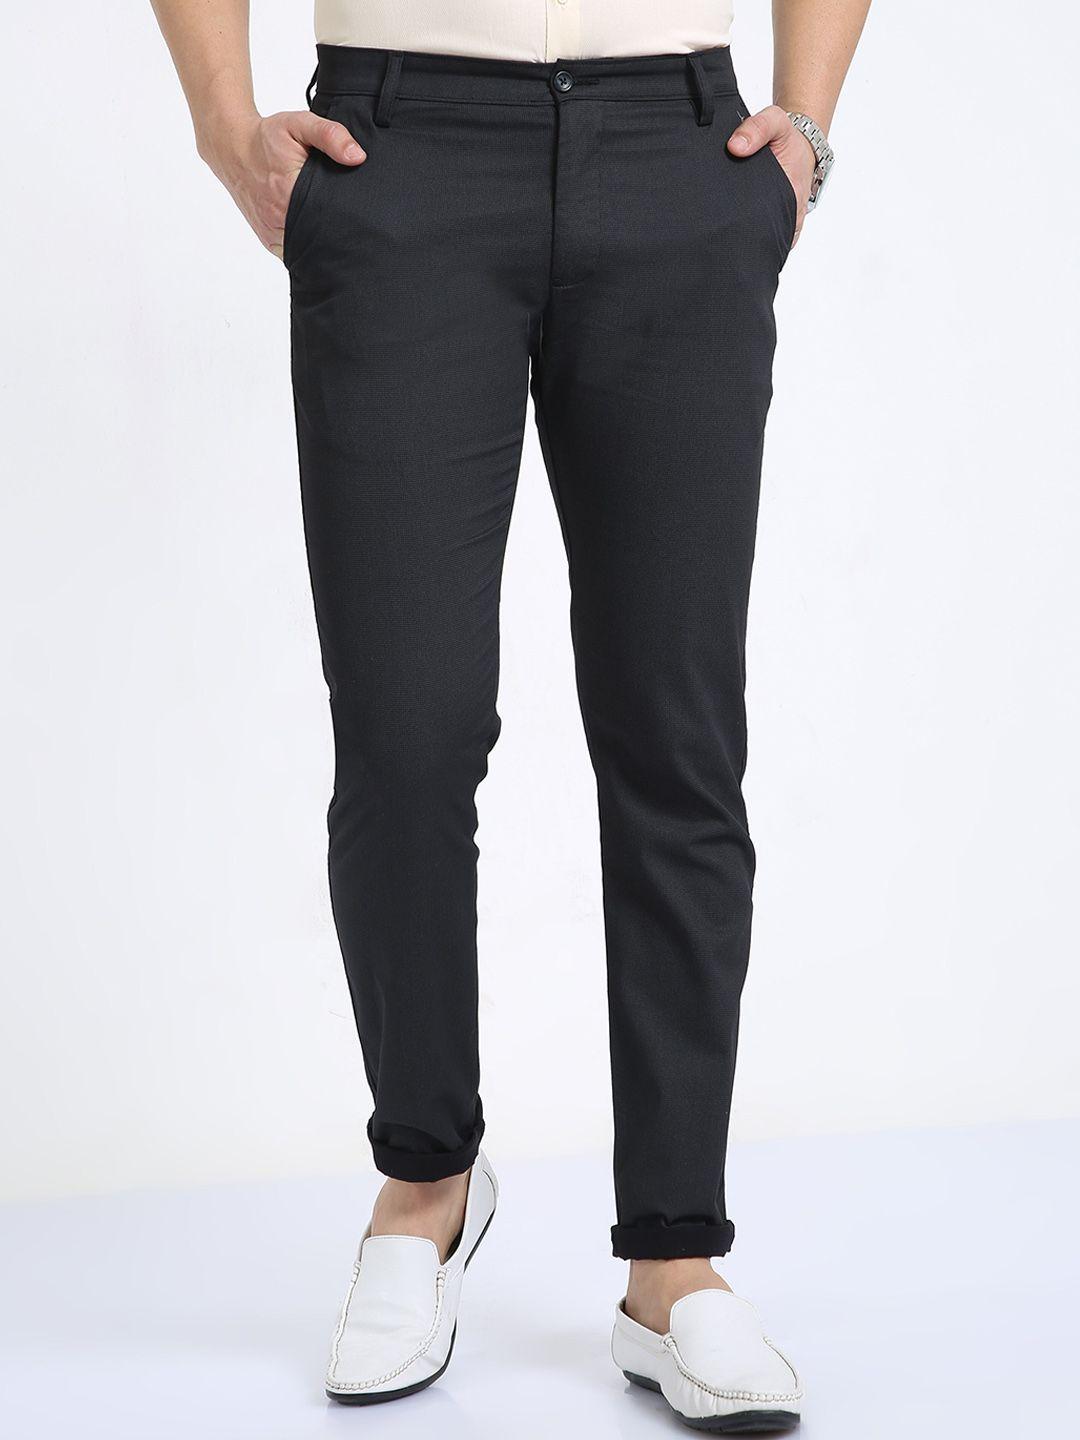 classic polo men cotton classic plain flat-front slim fit trousers